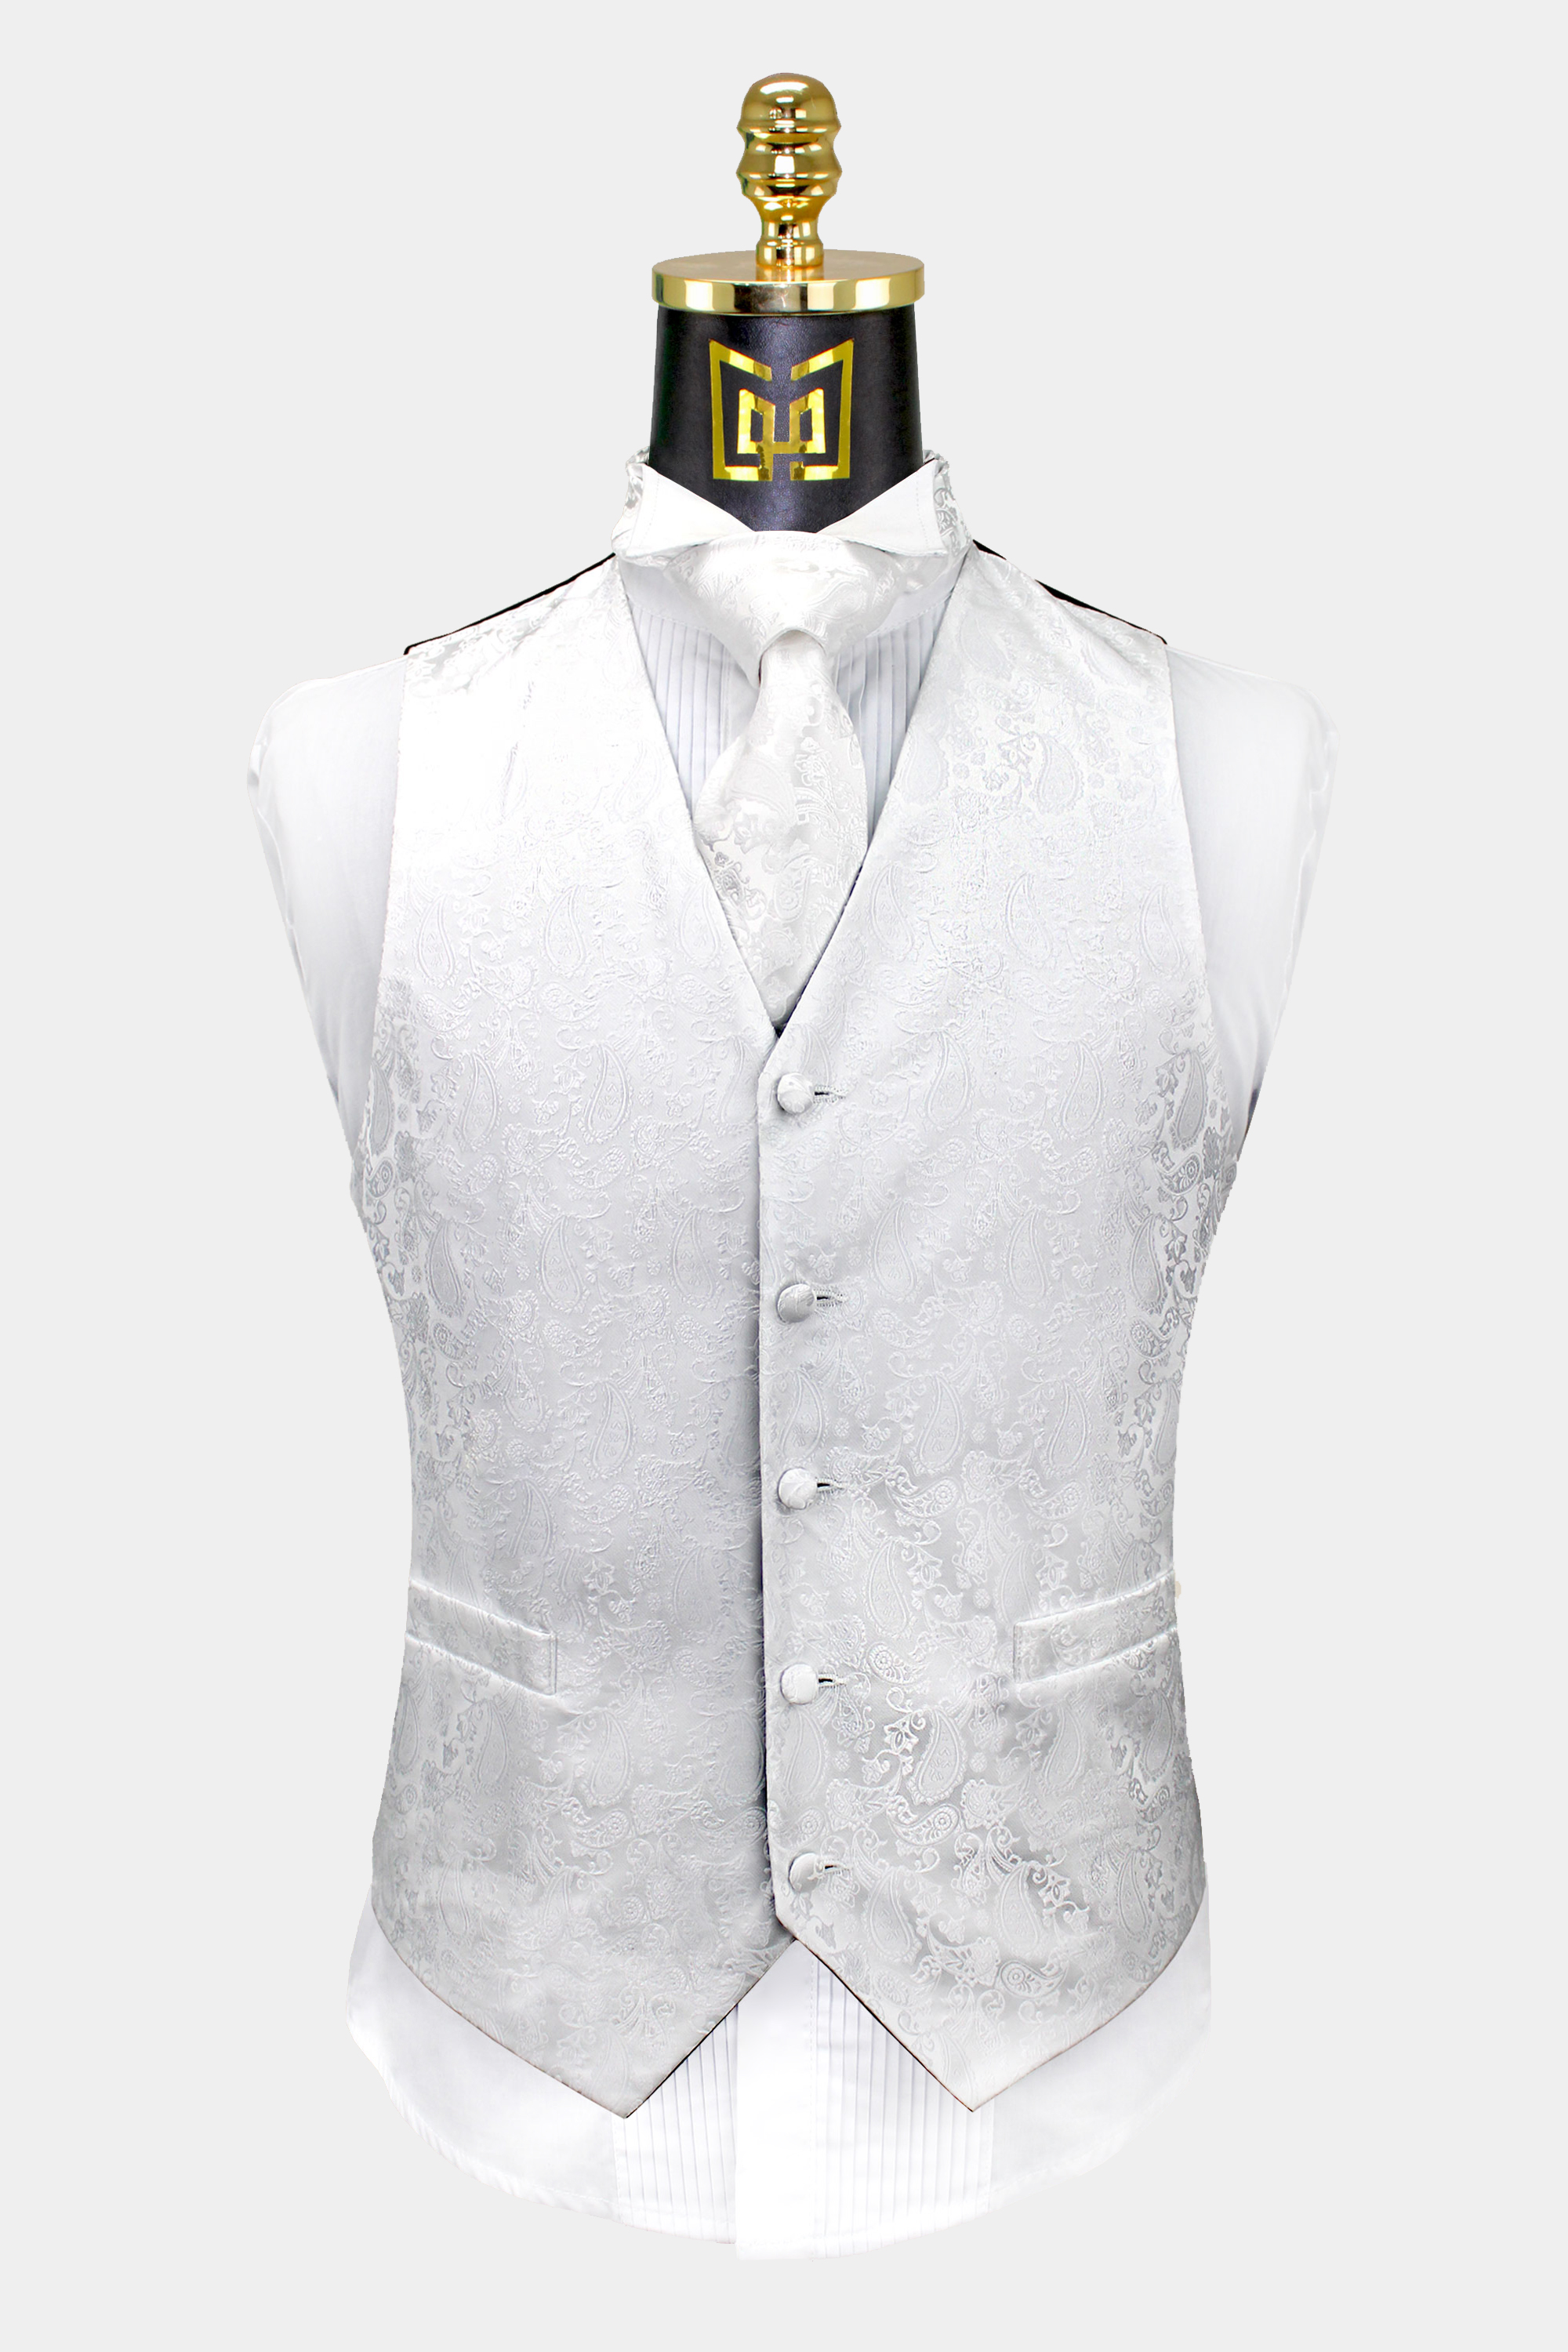 White-Paisley-Vest-and-Tie-Set-Wedding-Groom-Tuxedo-Vest-WAistcoat-from-Gentlemansguru.com_